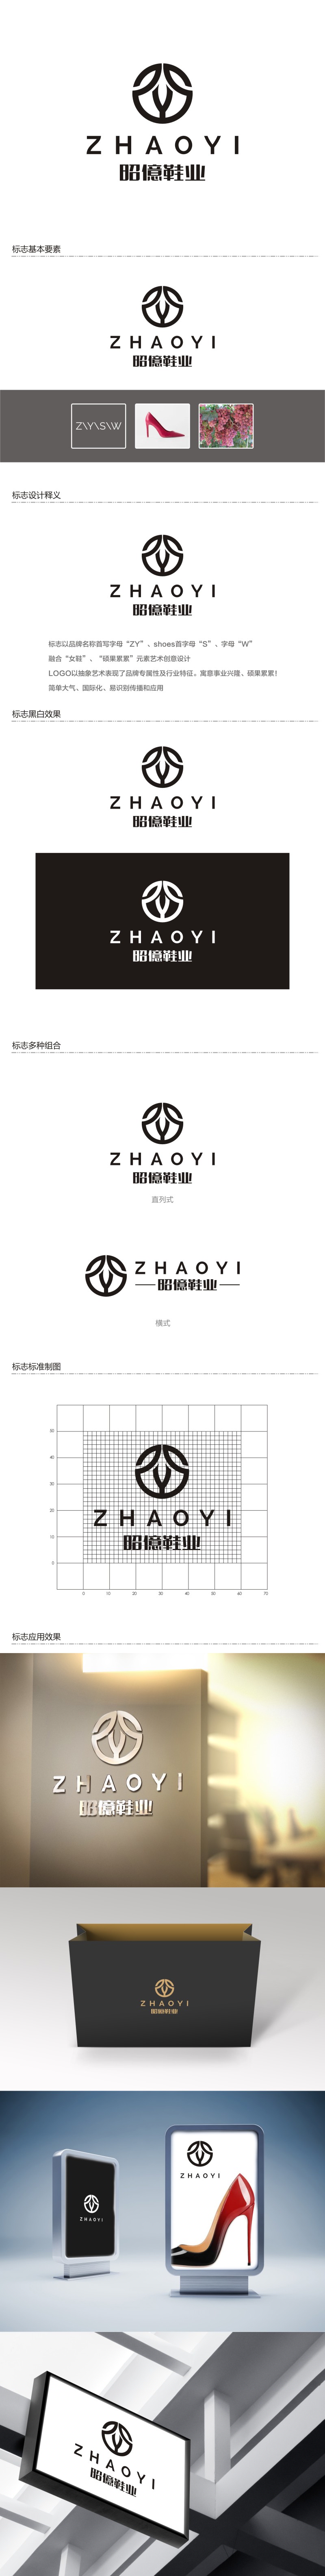 陈国伟的昭億鞋业logo设计